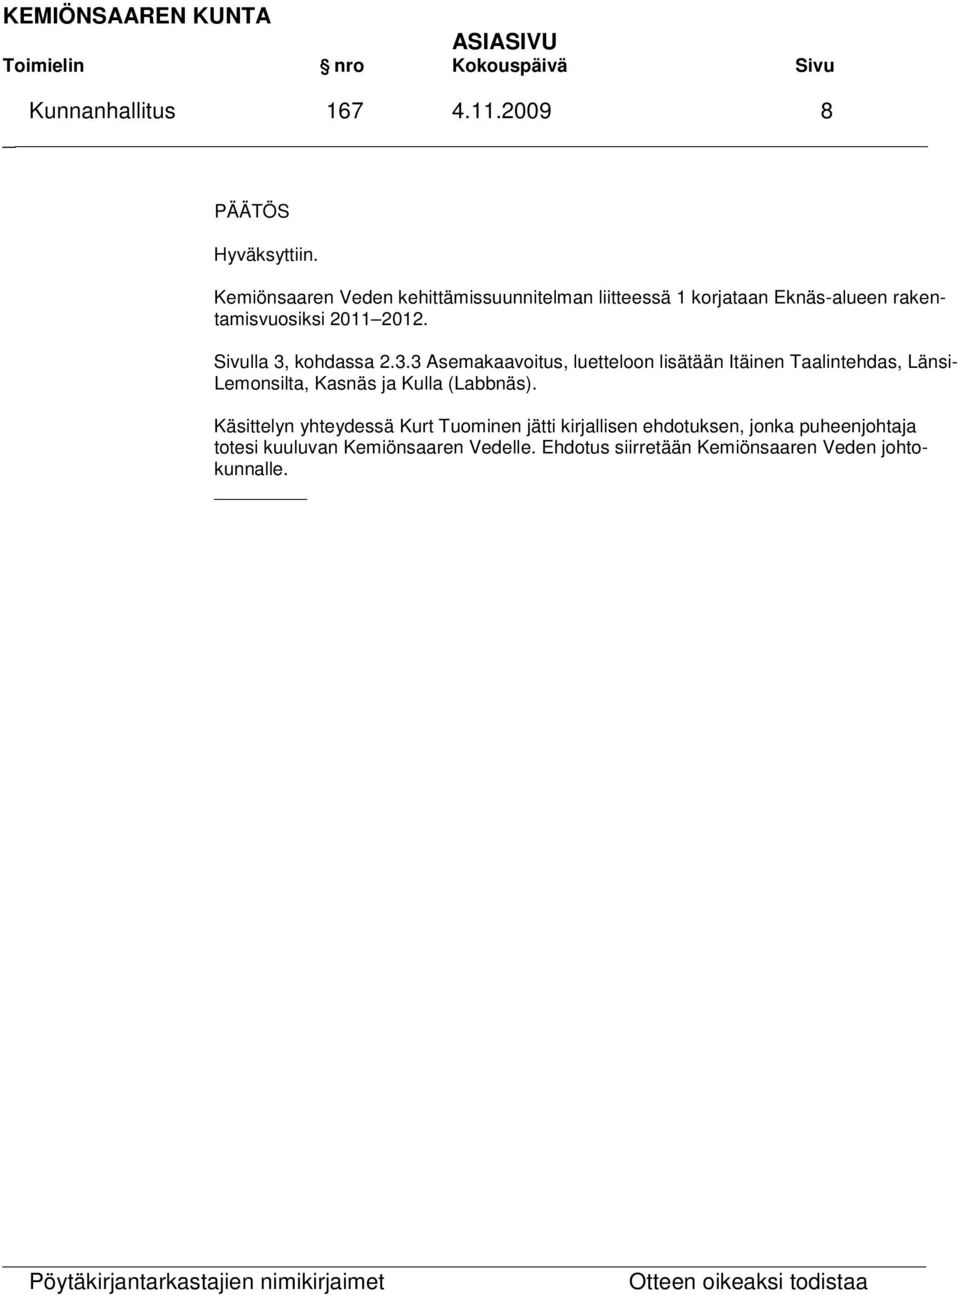 Sivulla 3, kohdassa 2.3.3 Asemakaavoitus, luetteloon lisätään Itäinen Taalintehdas, Länsi- Lemonsilta, Kasnäs ja Kulla (Labbnäs).